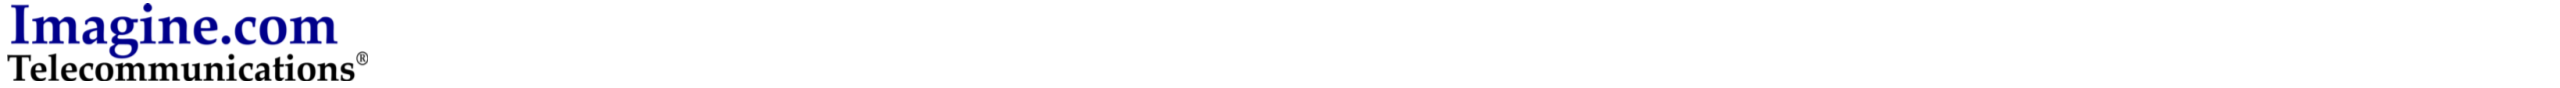 ImaginecomTelecom_Logo-outlines.png